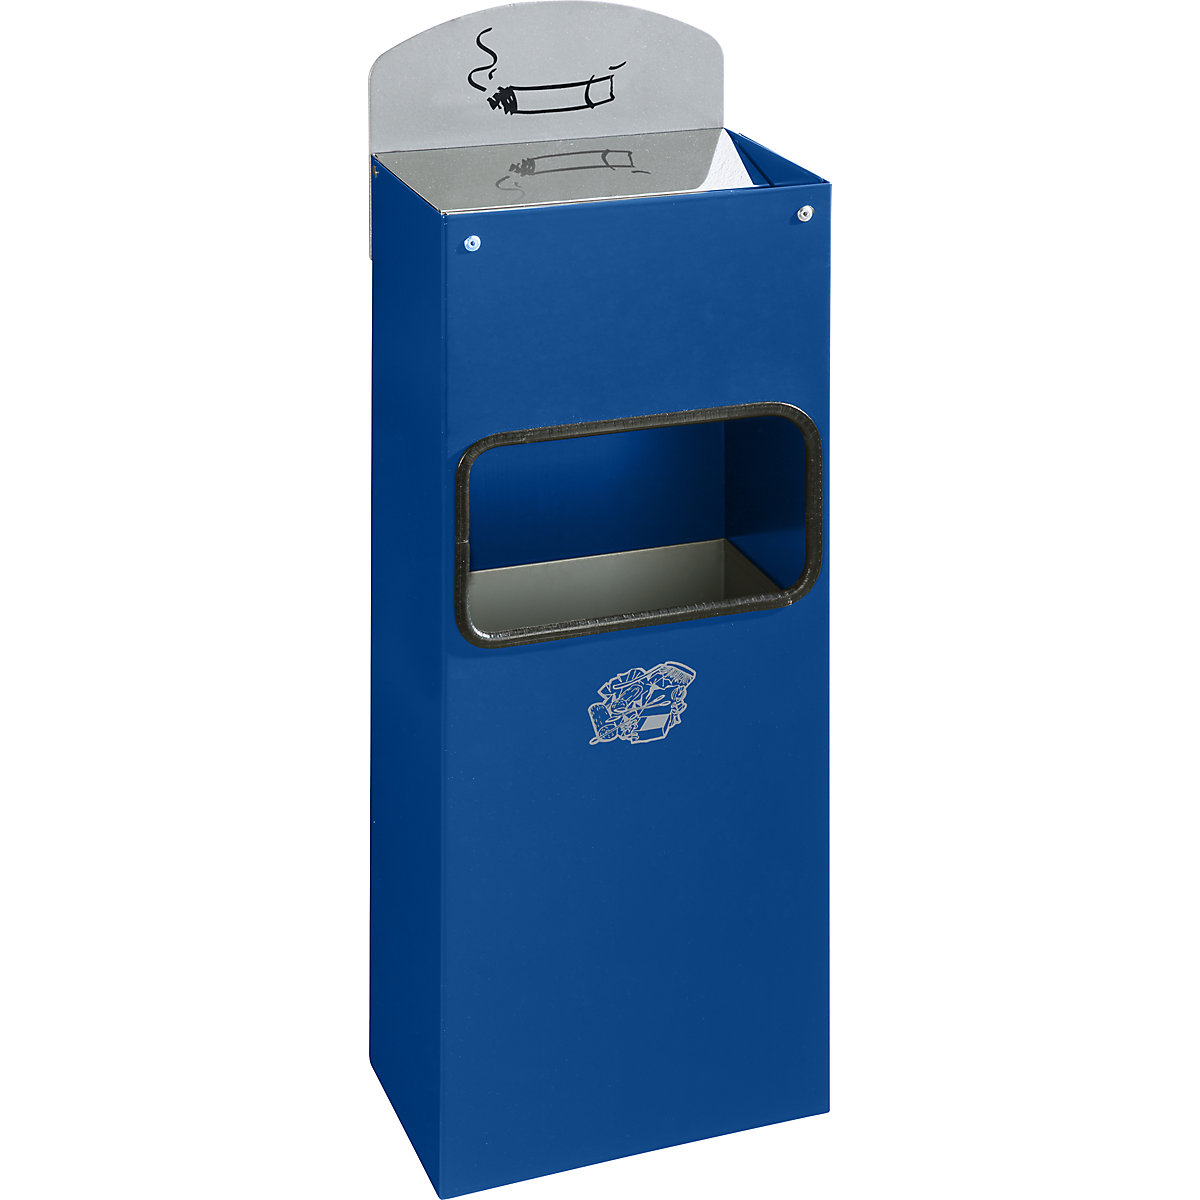 VAR – Combiné mural cendrier-poubelle avec ouverture pour dépôt des déchets, h x l x p 505 x 200 x 125 mm, tôle d'acier, bleu gentiane